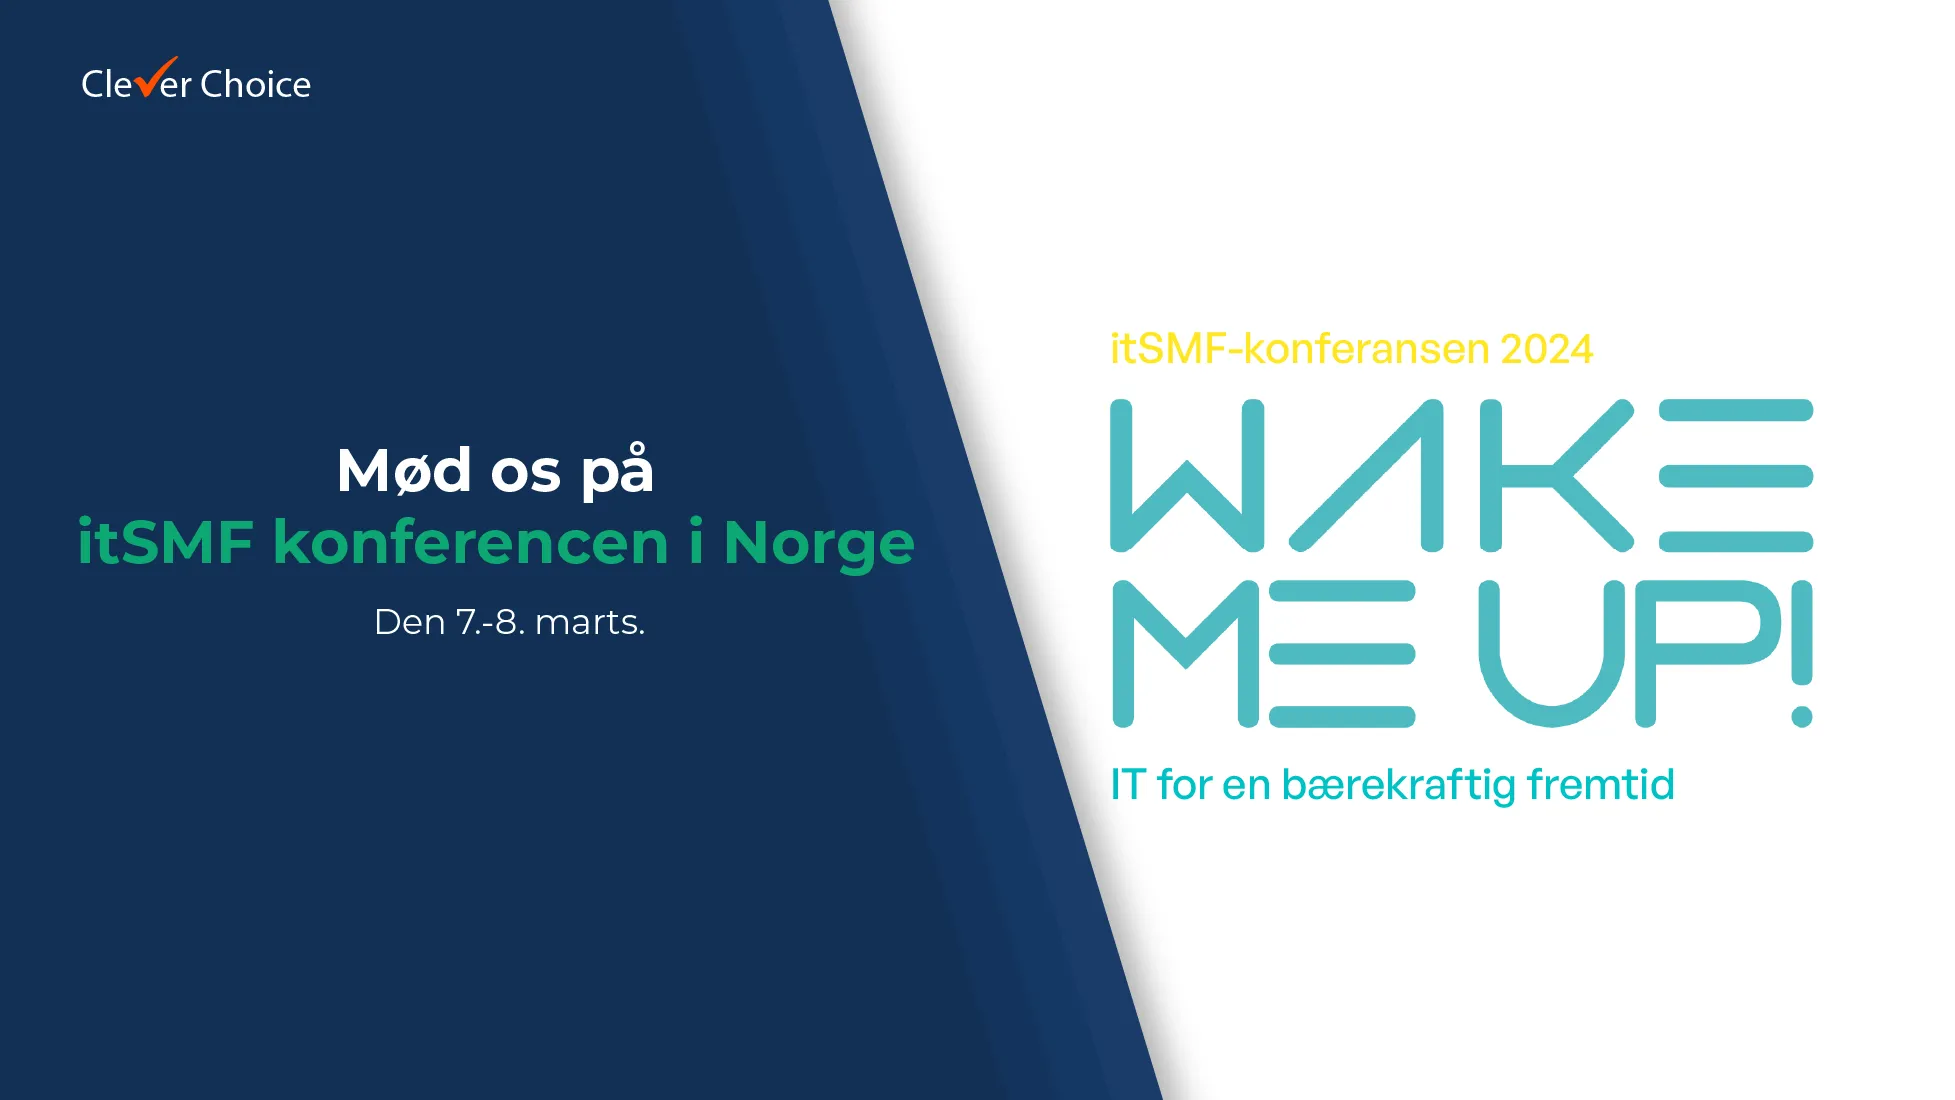 For tredje gang deltager Clever Choice på itSMF konferencen i Norge som afholdes d. 7.-8. marts.